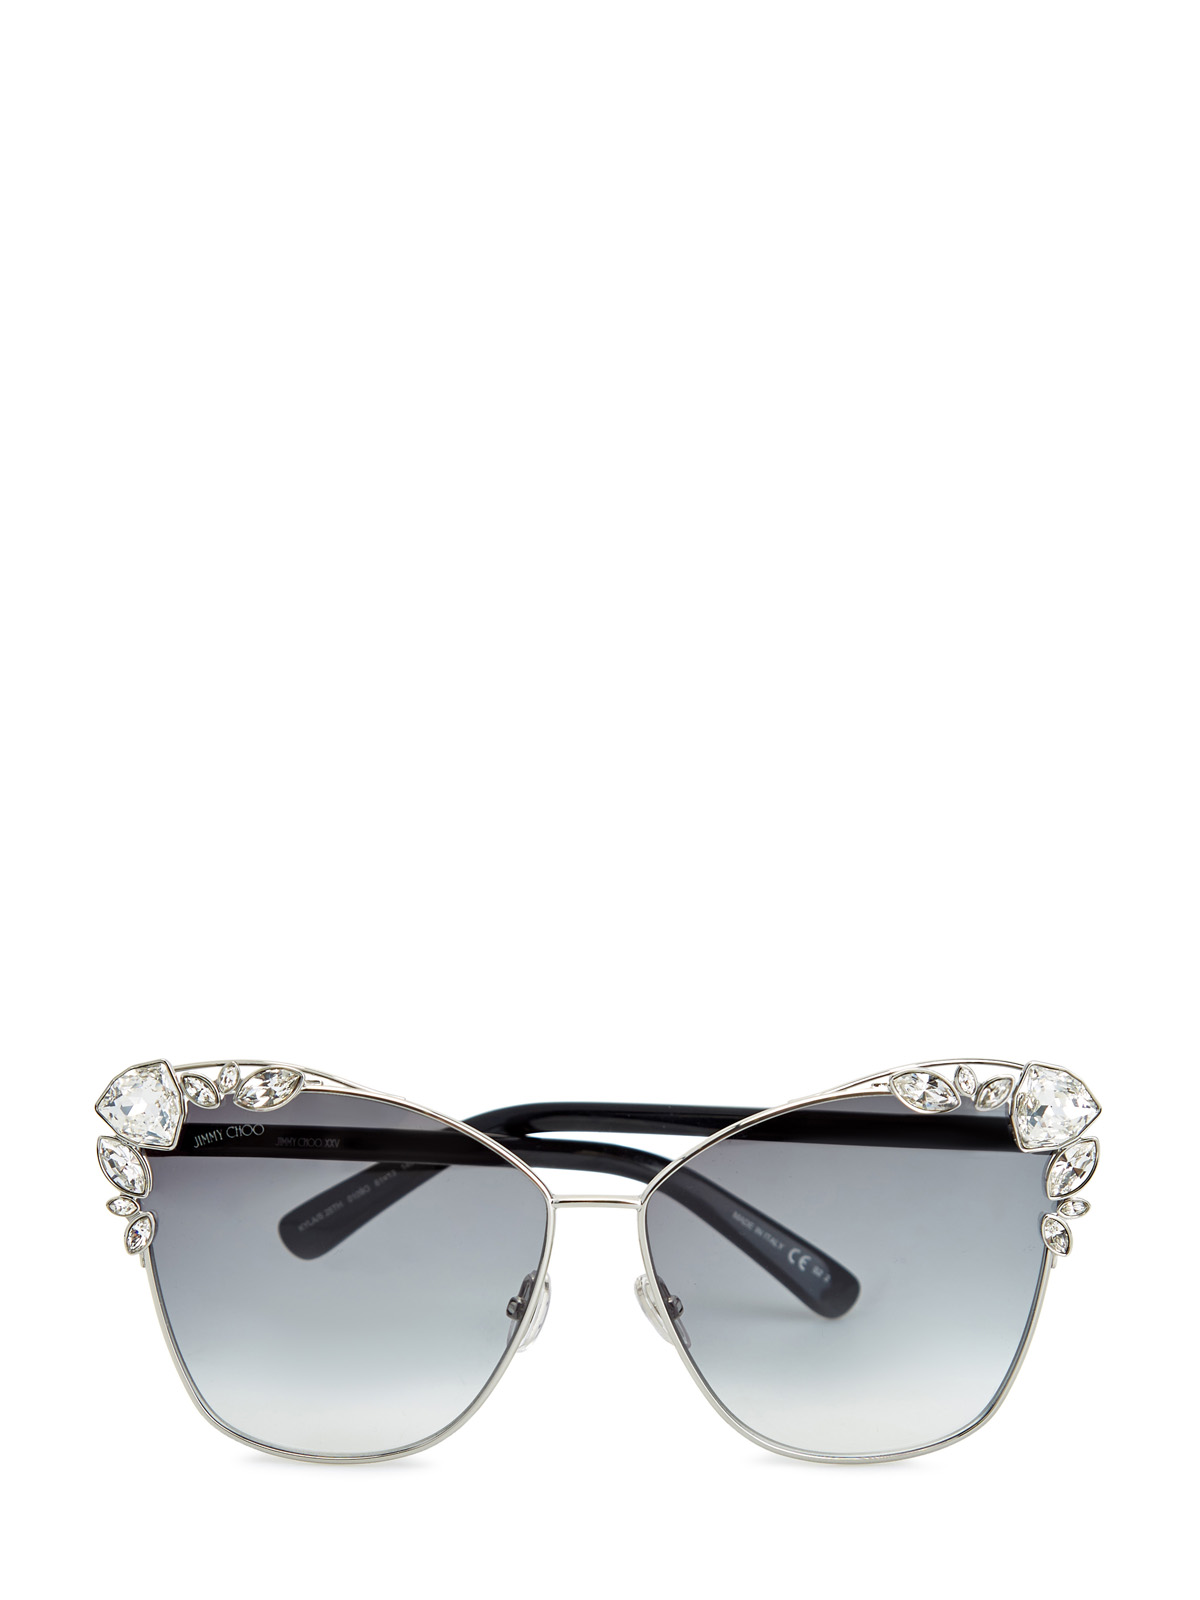 Солнцезащитные очки Kyla с кристаллами Swarovski JIMMY CHOO  (sunglasses) - фото 1